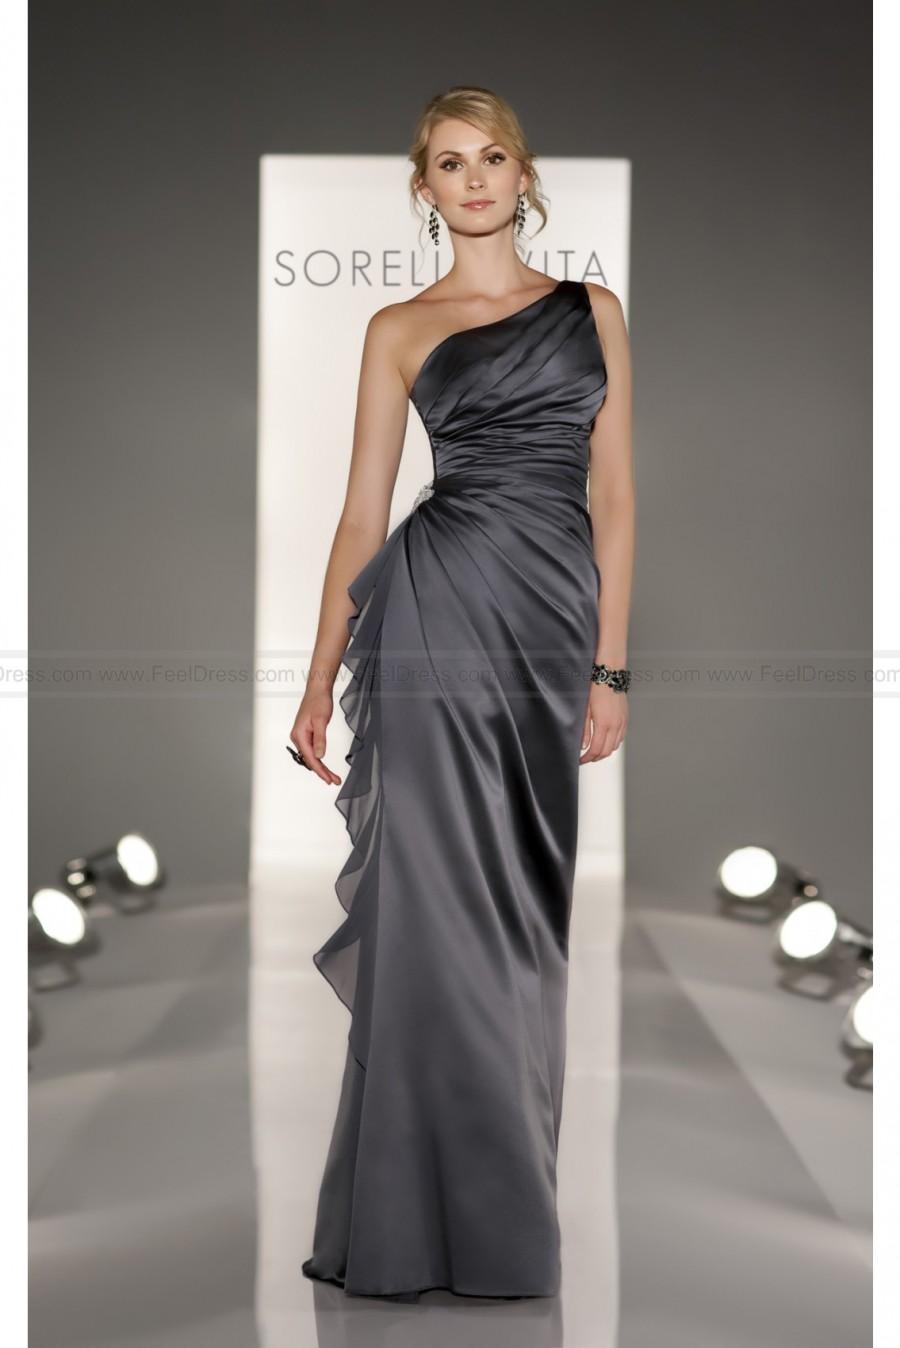 زفاف - Sorella Vita Grey Bridesmaid Dress Style 8191